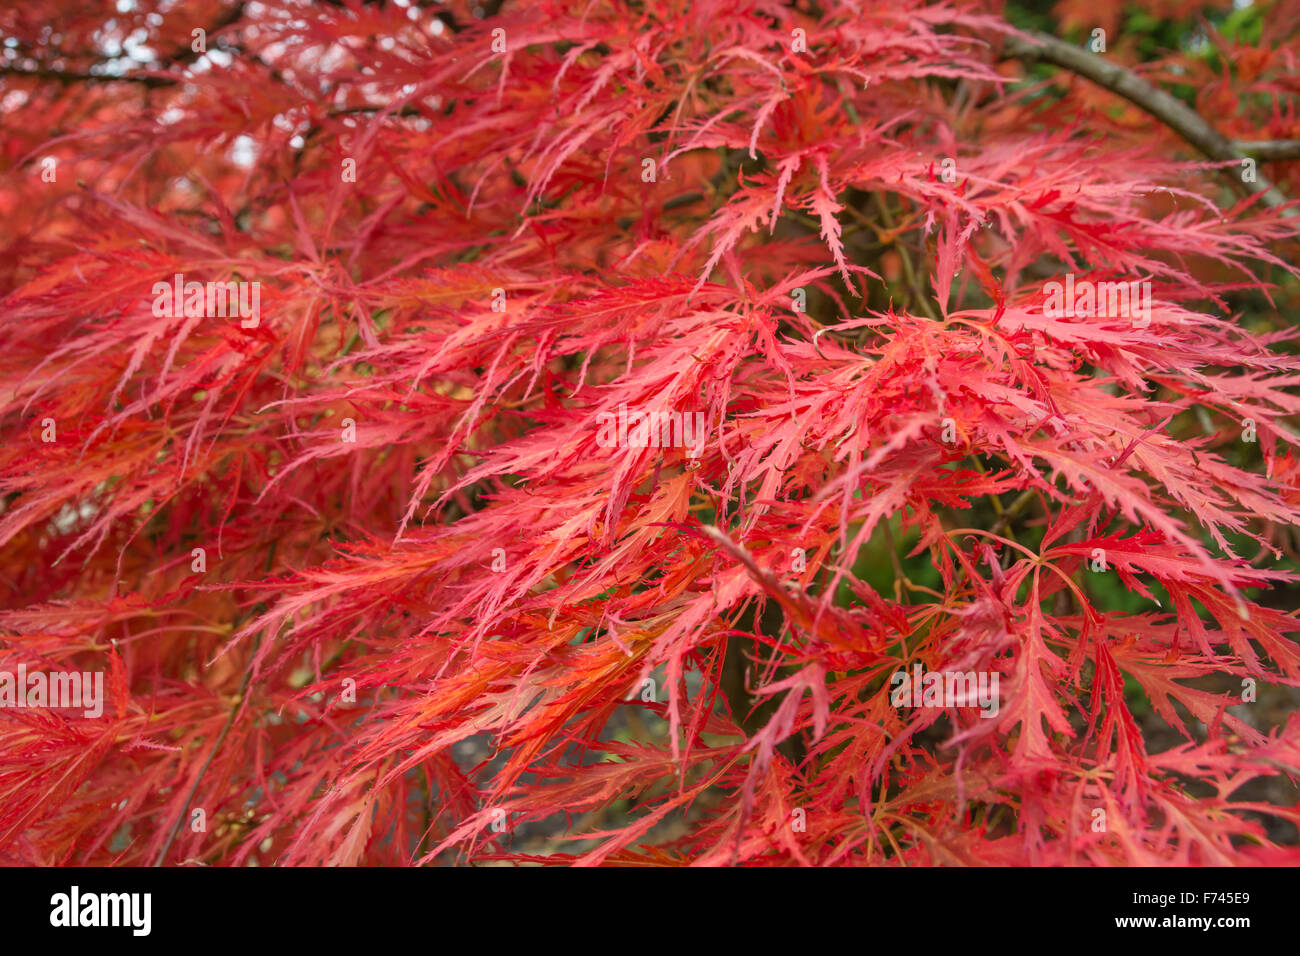 Acer palmatum 'Dissectum Atropurpureum' - Japanese Maple Stock Photo